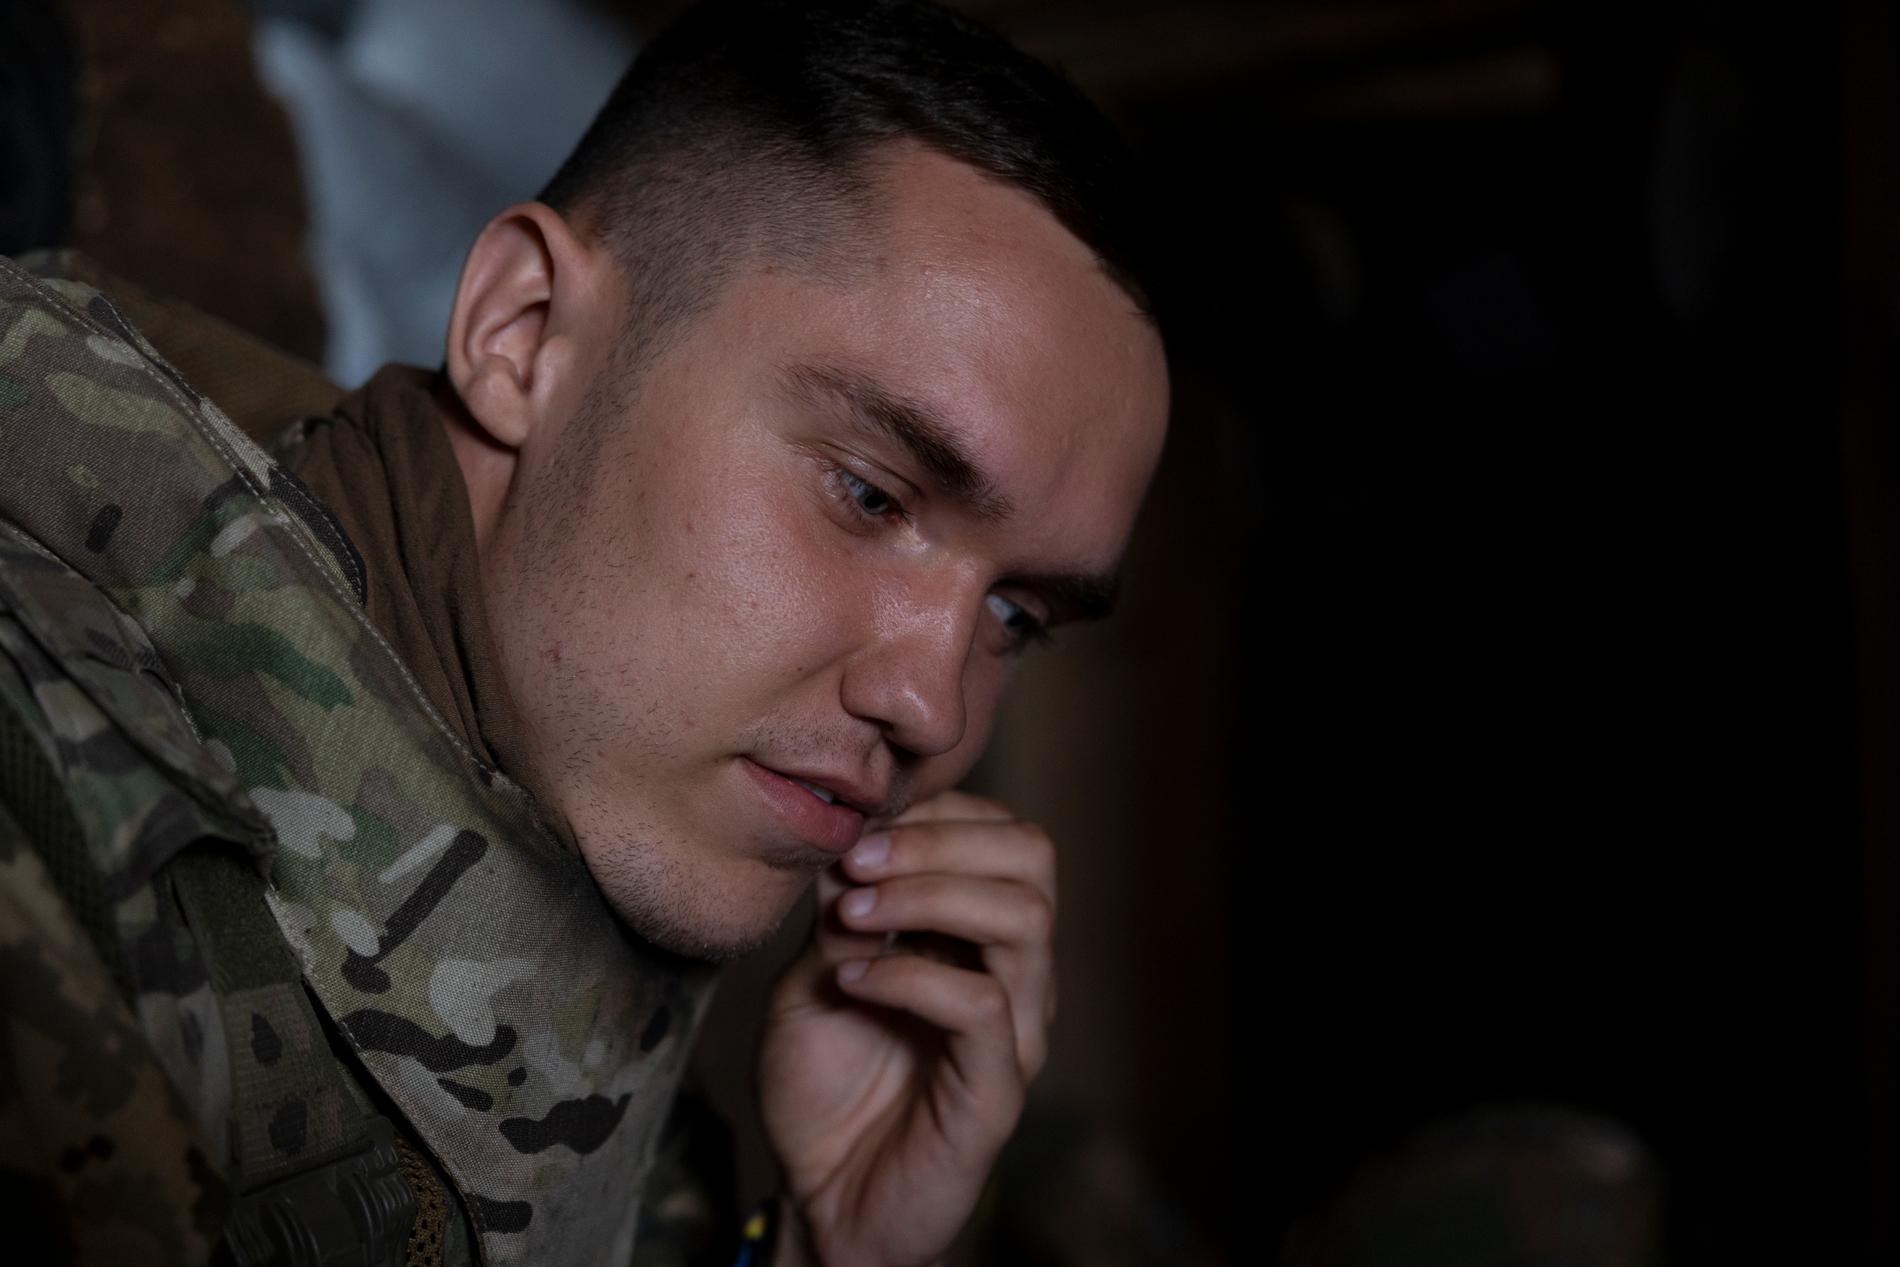 Drönarpiloten Chernihiv, 24, lyssnar på ljudet av granater som exploderar utanför bunkern.